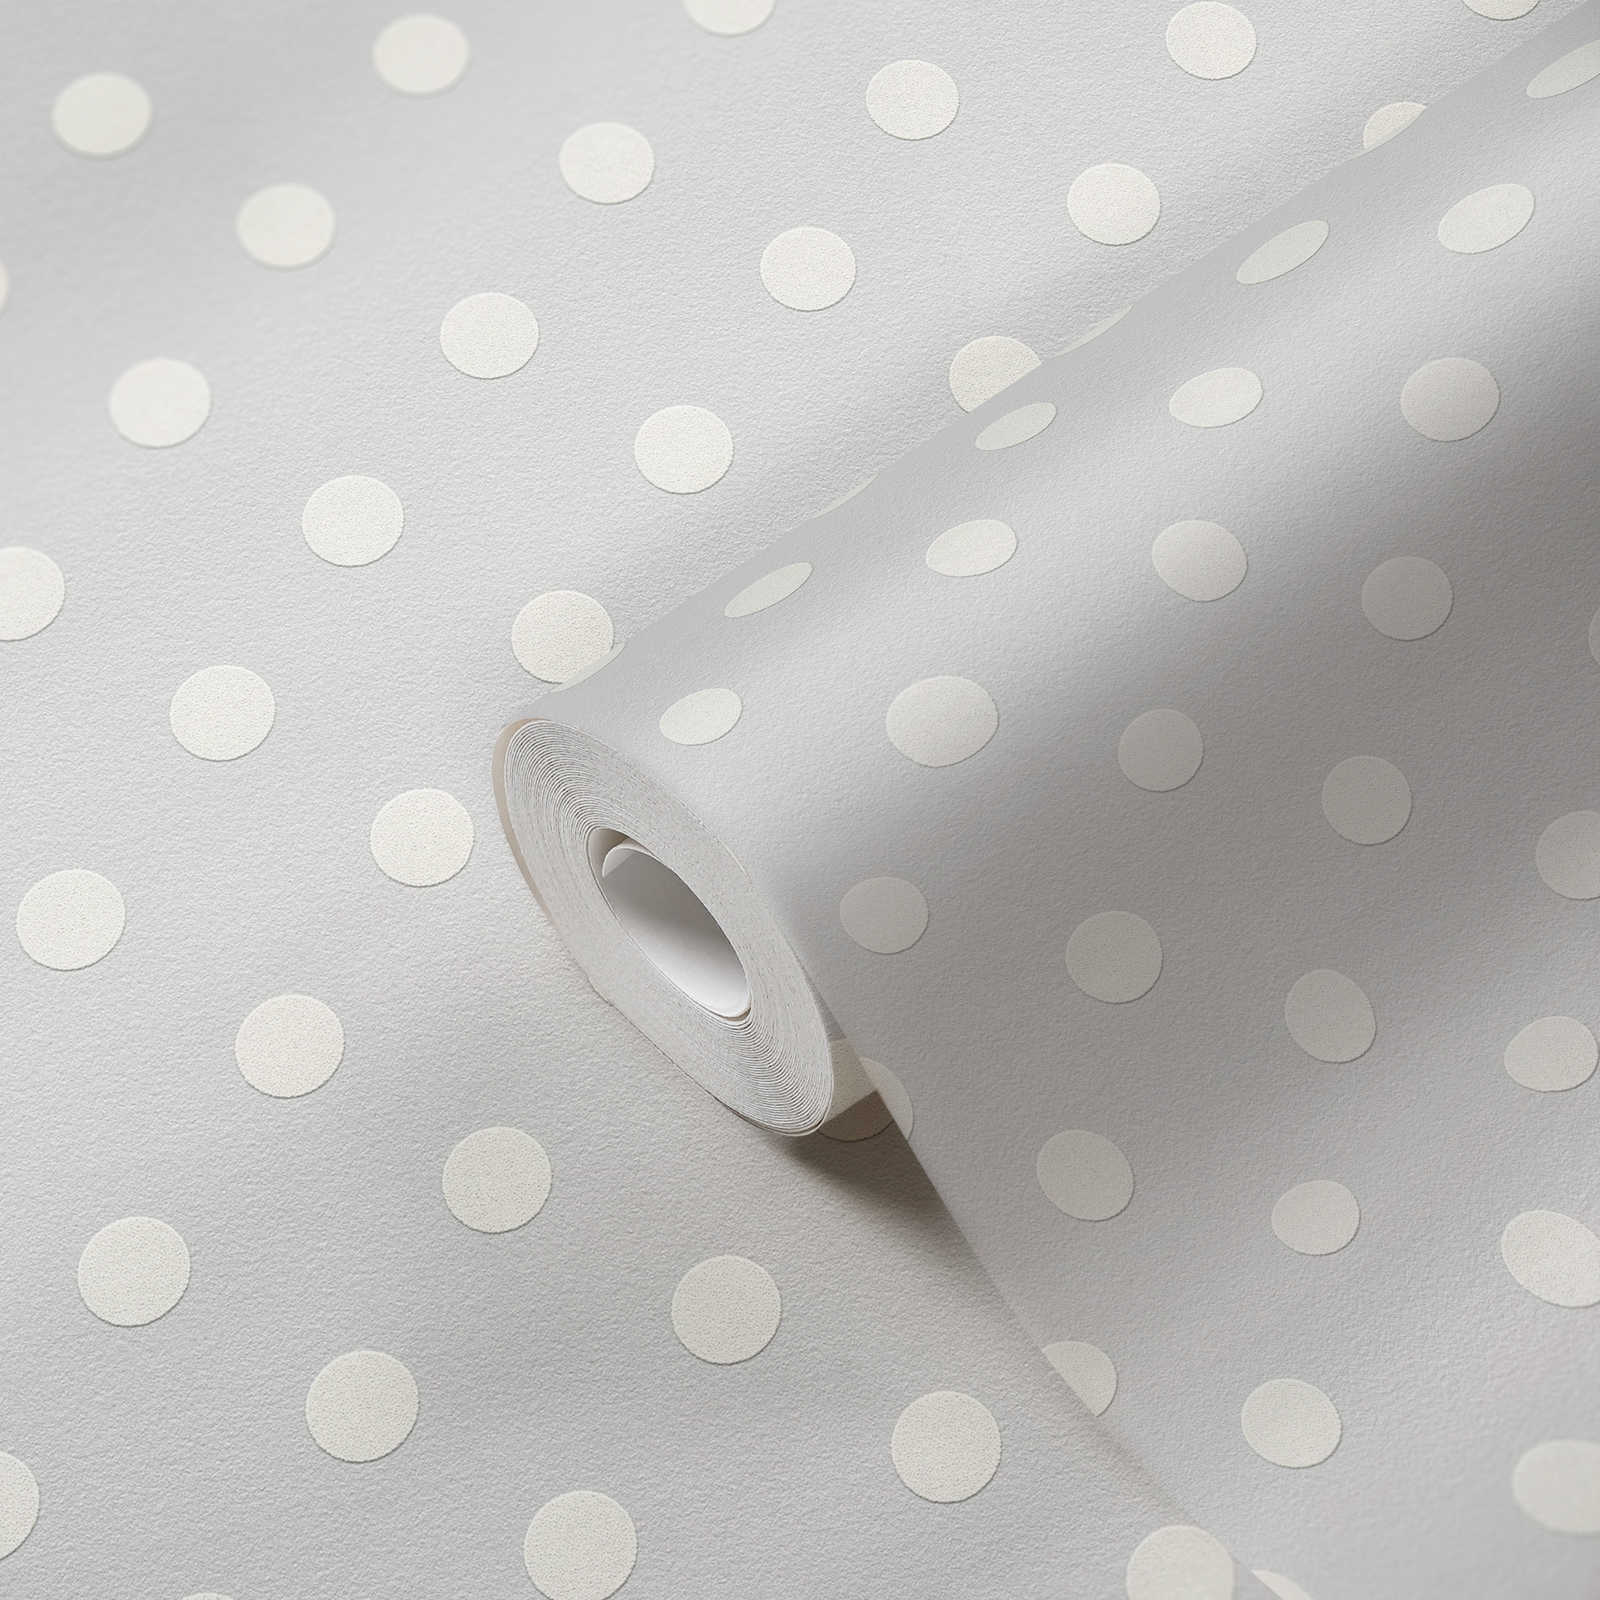             Papier peint à pois Polka Dots Design - gris, blanc
        